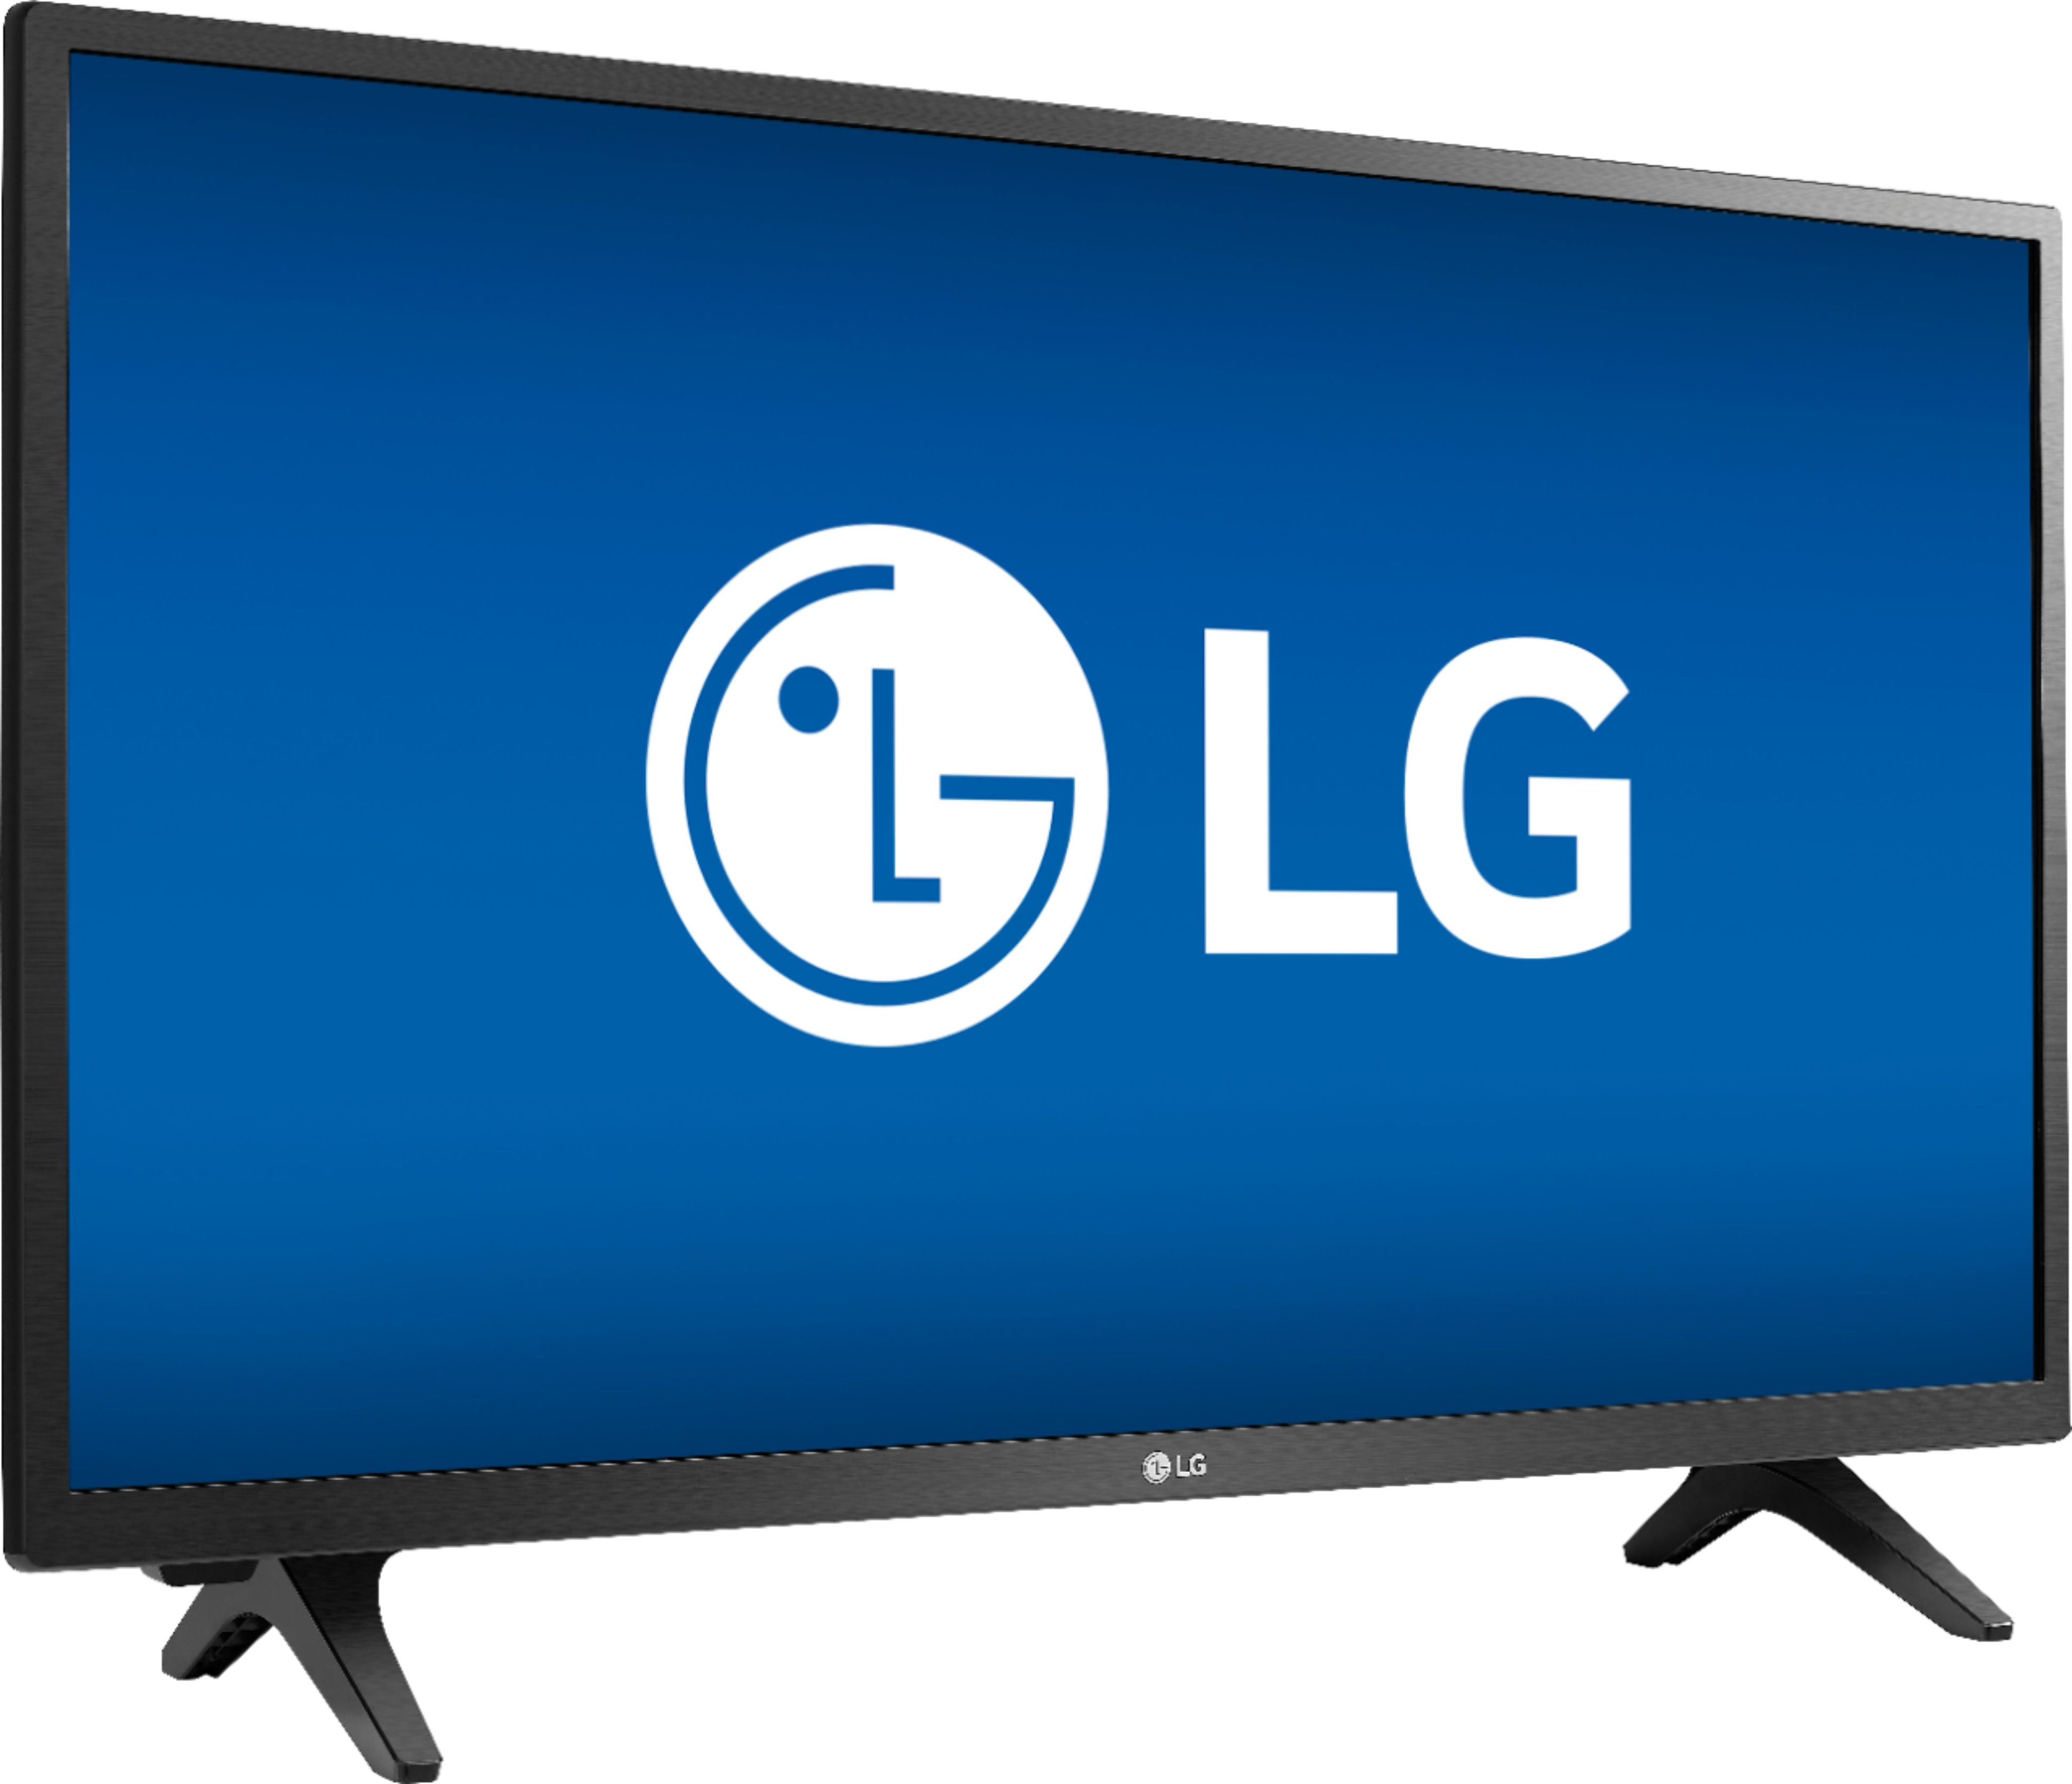 nevø couscous bølge Best Buy: LG 28" Class LED HD TV 28LM400B-PU